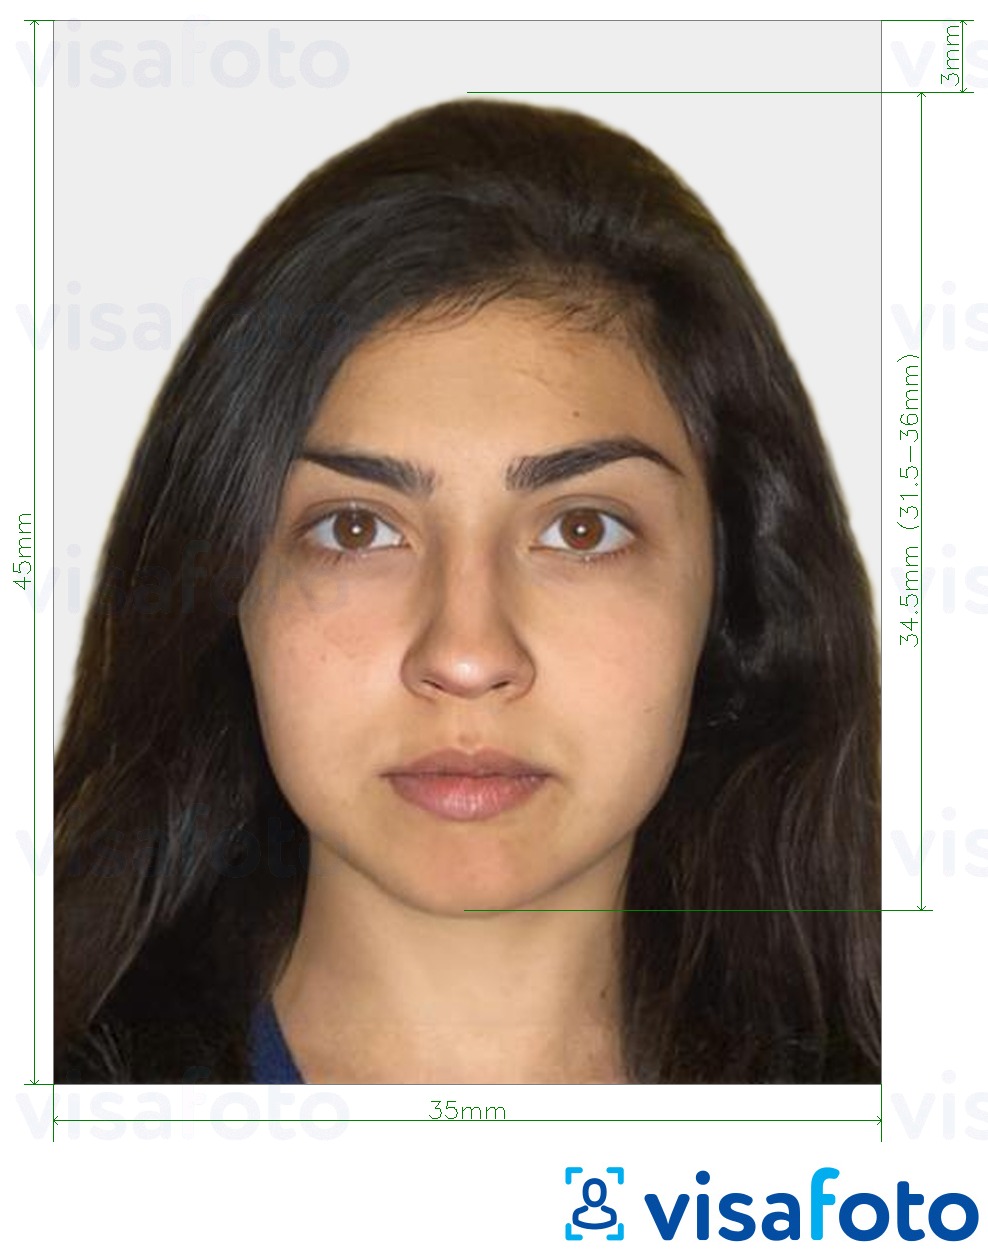 Exemple de foto per a Israel Visa 35x45mm (3.5x4.5 cm) amb la mida exacta especificada